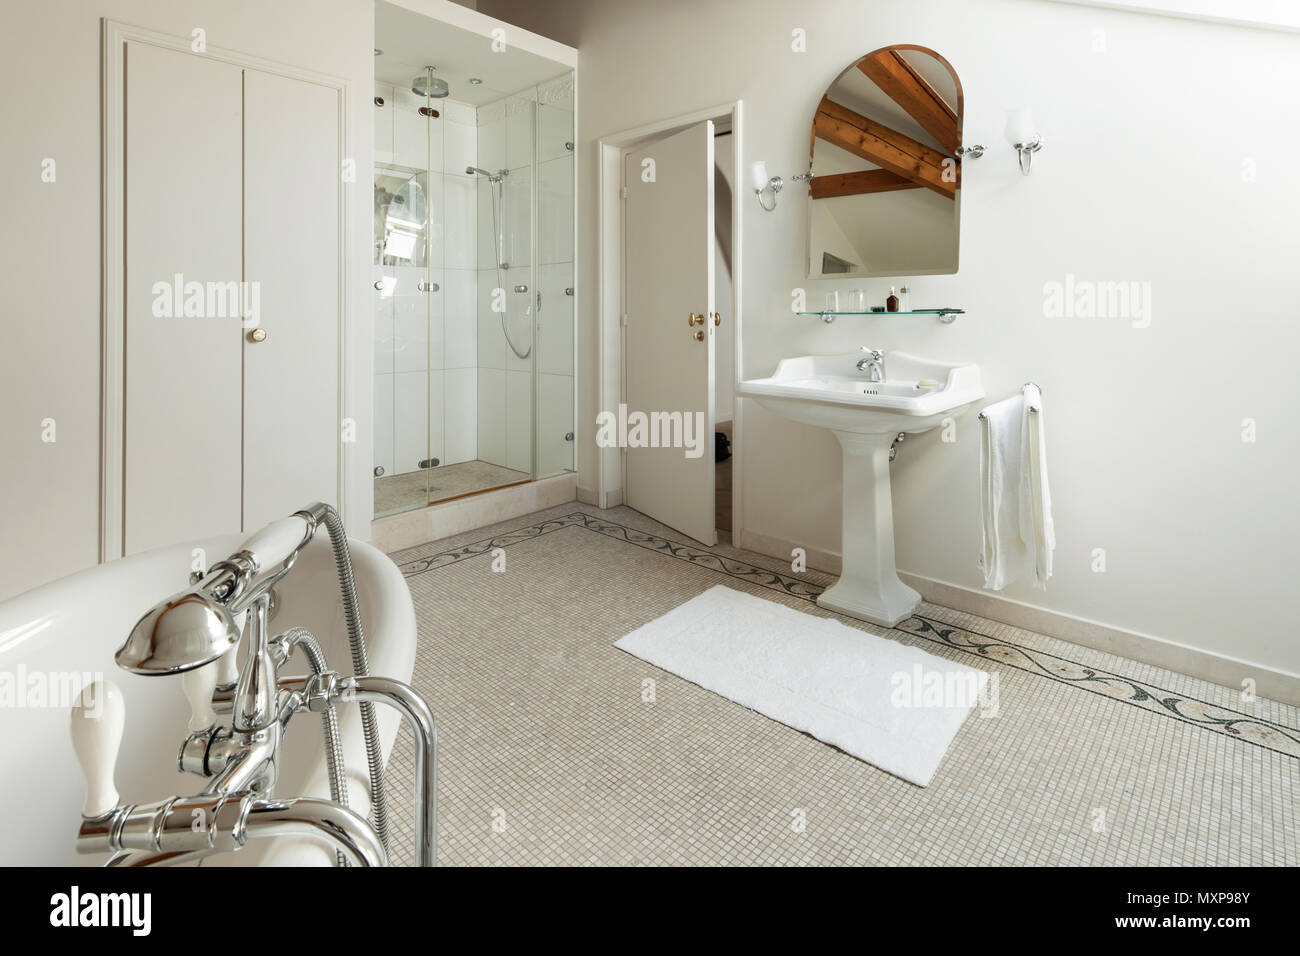 Intérieur d'une demeure de luxe, salle de bains avec douche et baignoire Banque D'Images